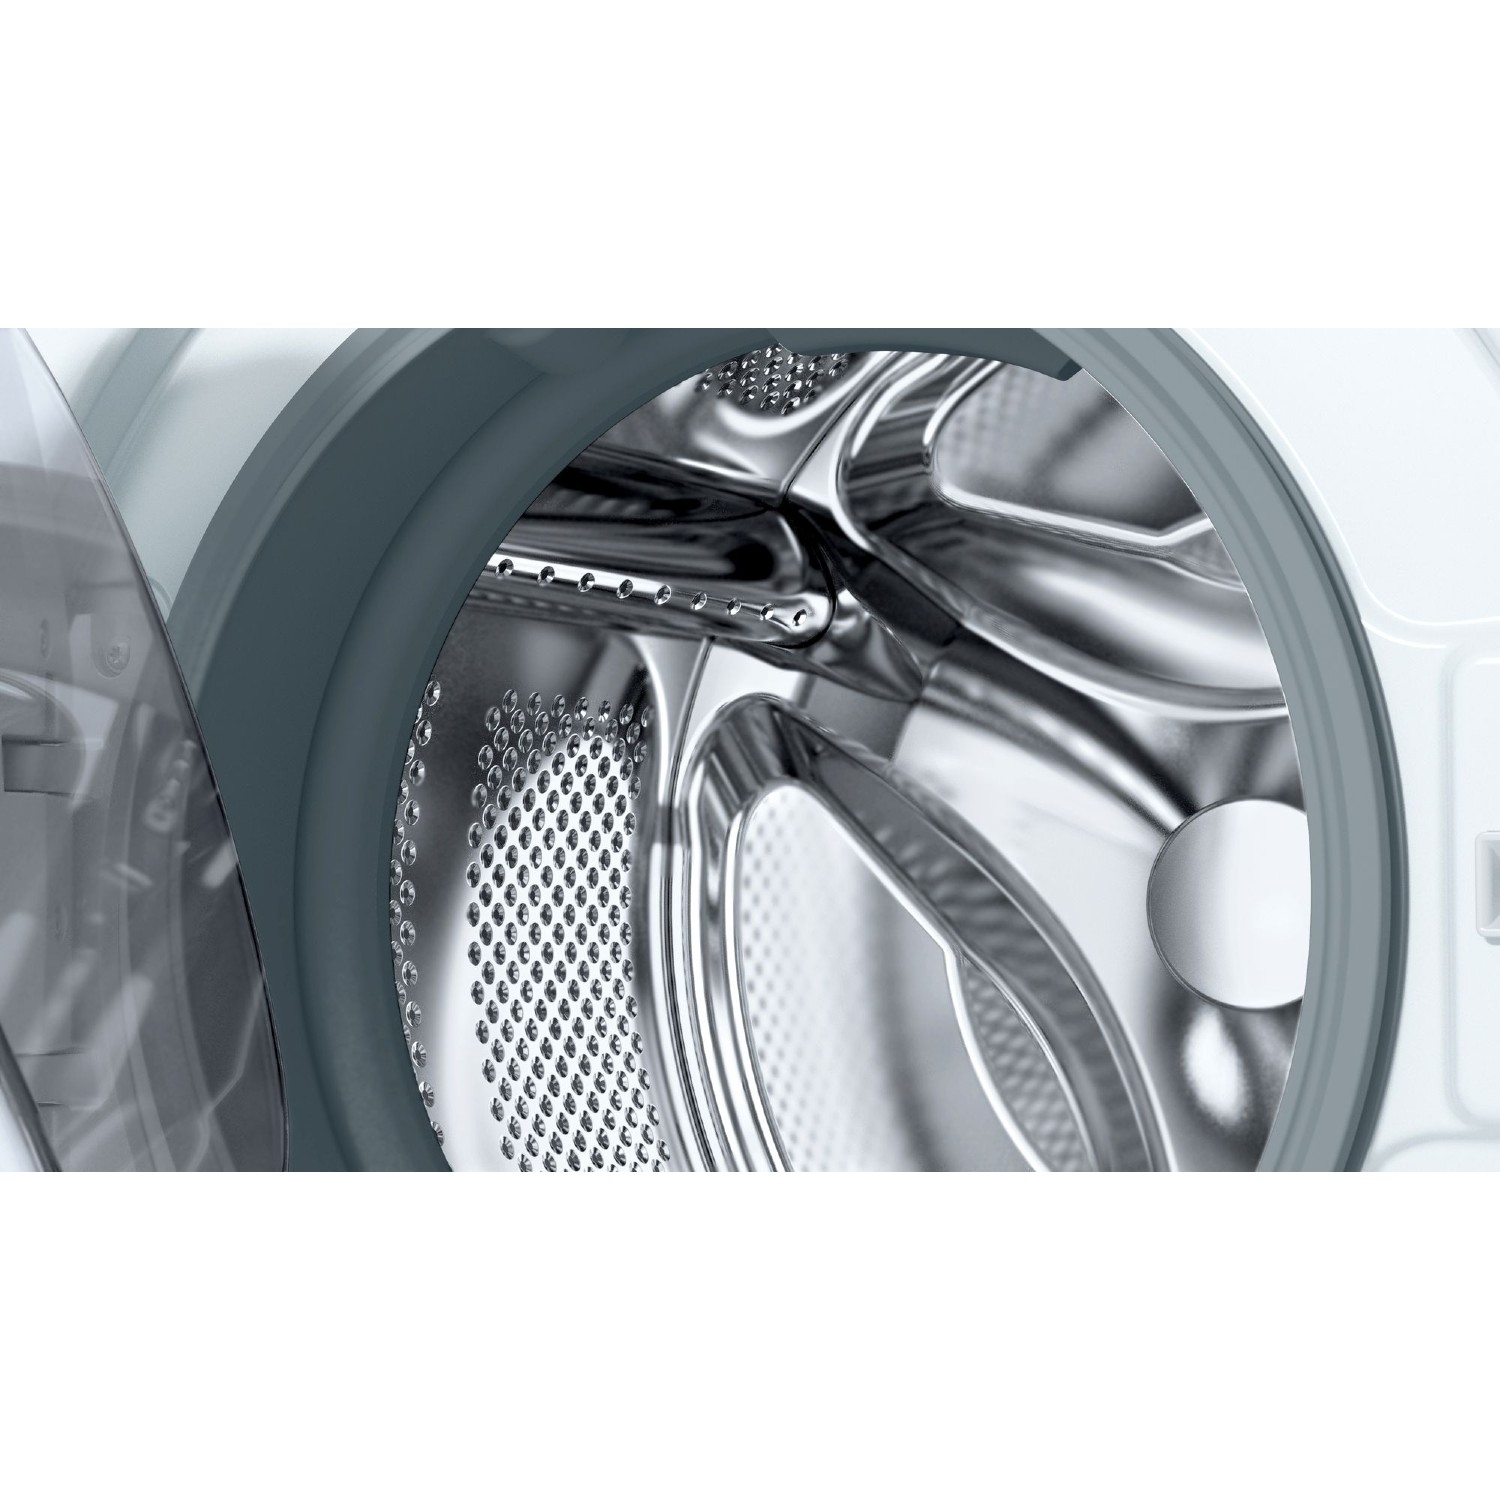 Bosch WAJ28008GB 7kg 1400 Spin Washing Machine with SpeedPerfect - White - 4